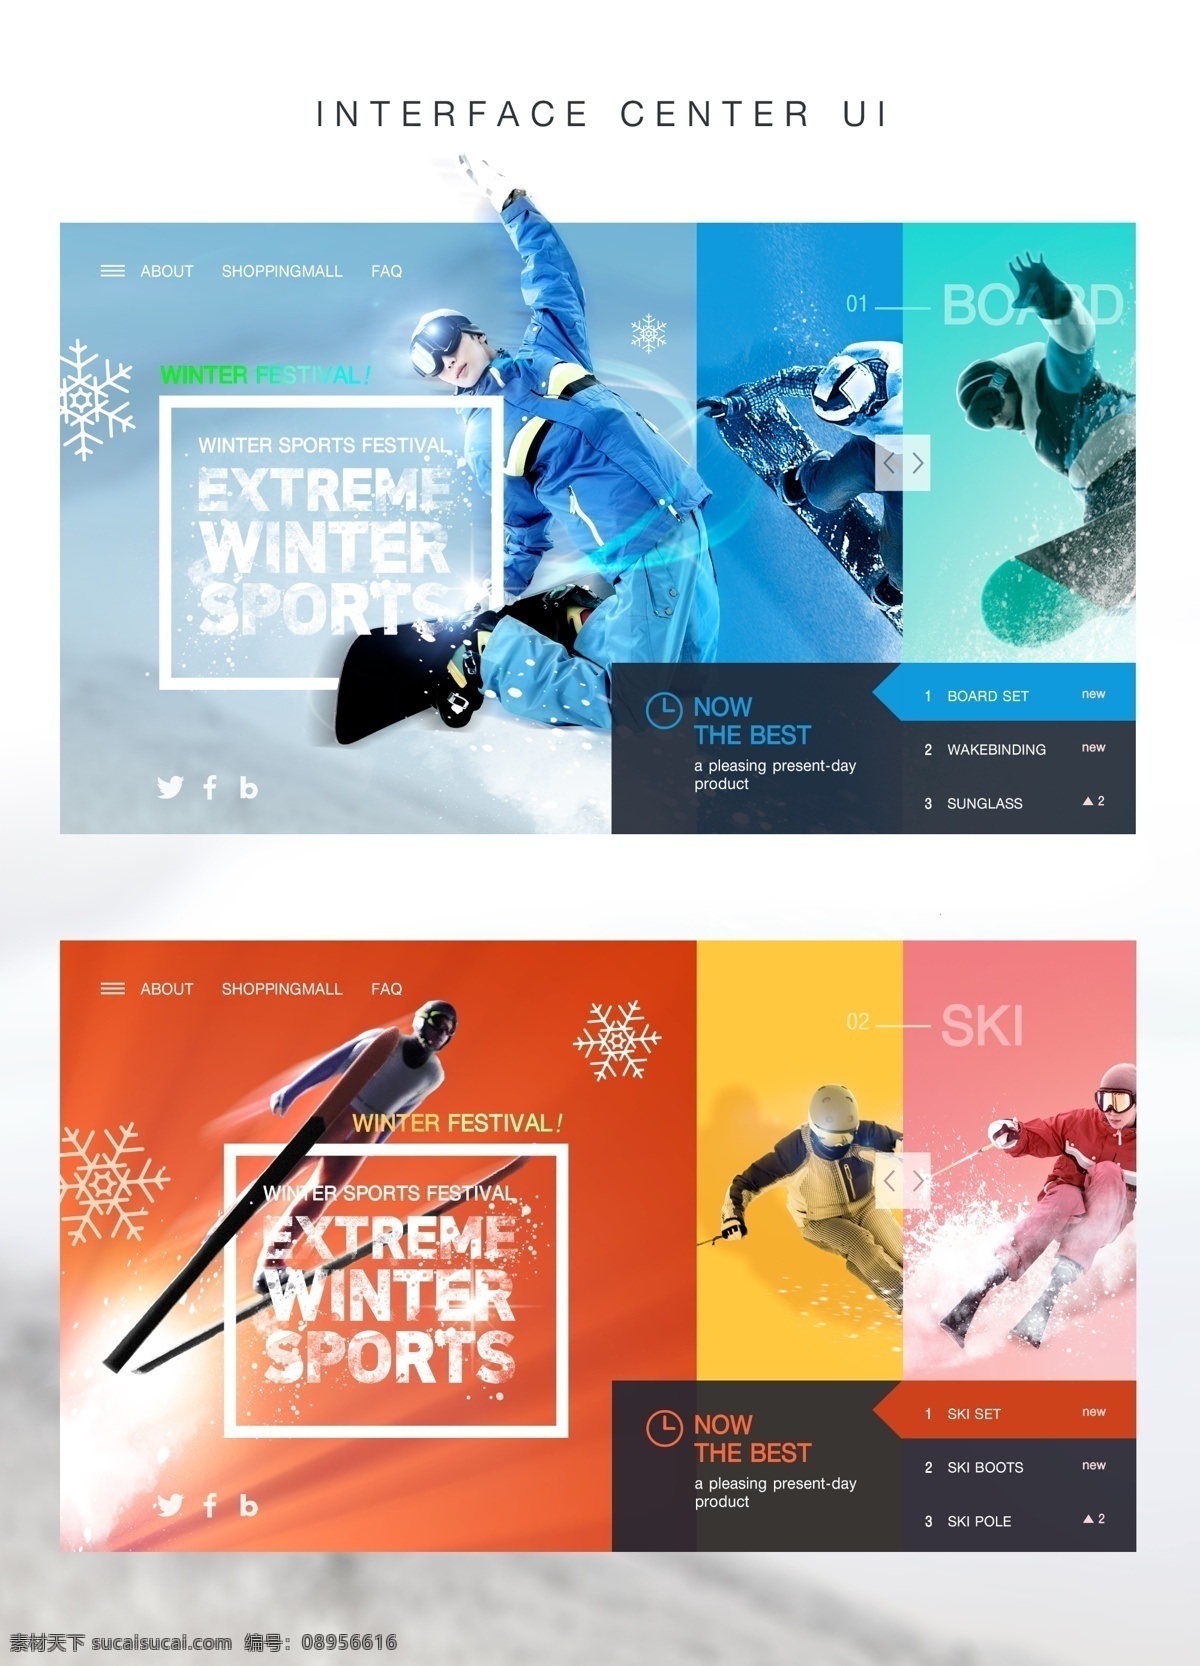 ui界面 体育界面 体育海报 体育元素 体育素材 体育背景 体育人物 冬季体育运动 滑雪 滑雪运动员 体育用品 移动界面设计 客户端界面